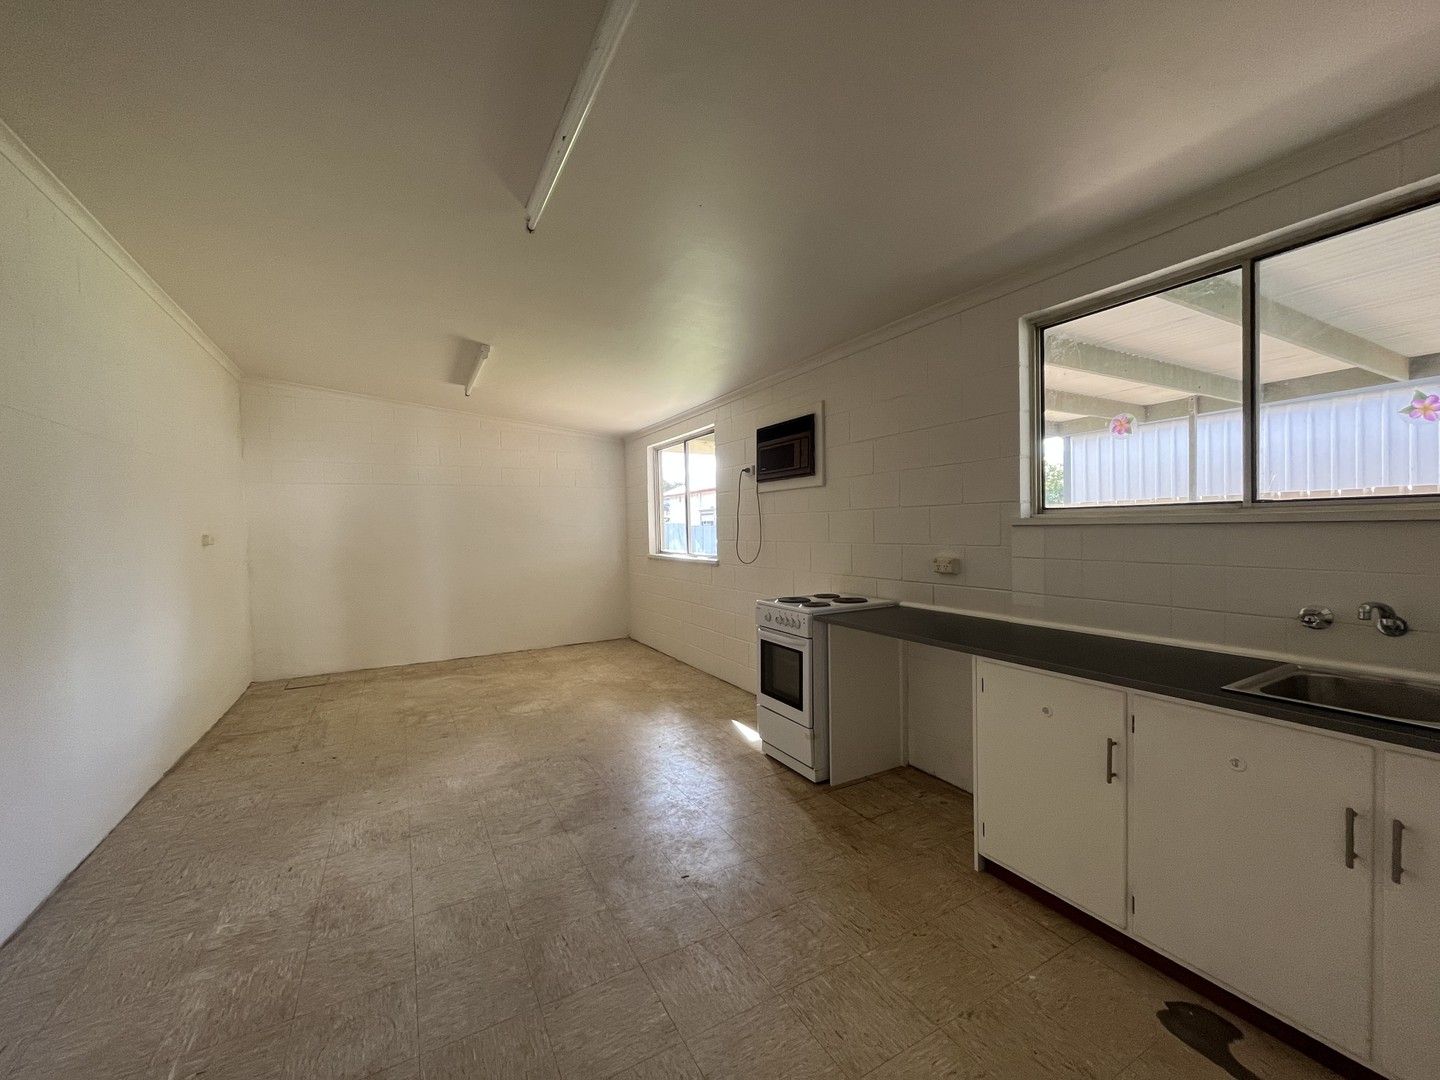 1 bedrooms House in 59-61B Flinders Terrace PORT AUGUSTA SA, 5700